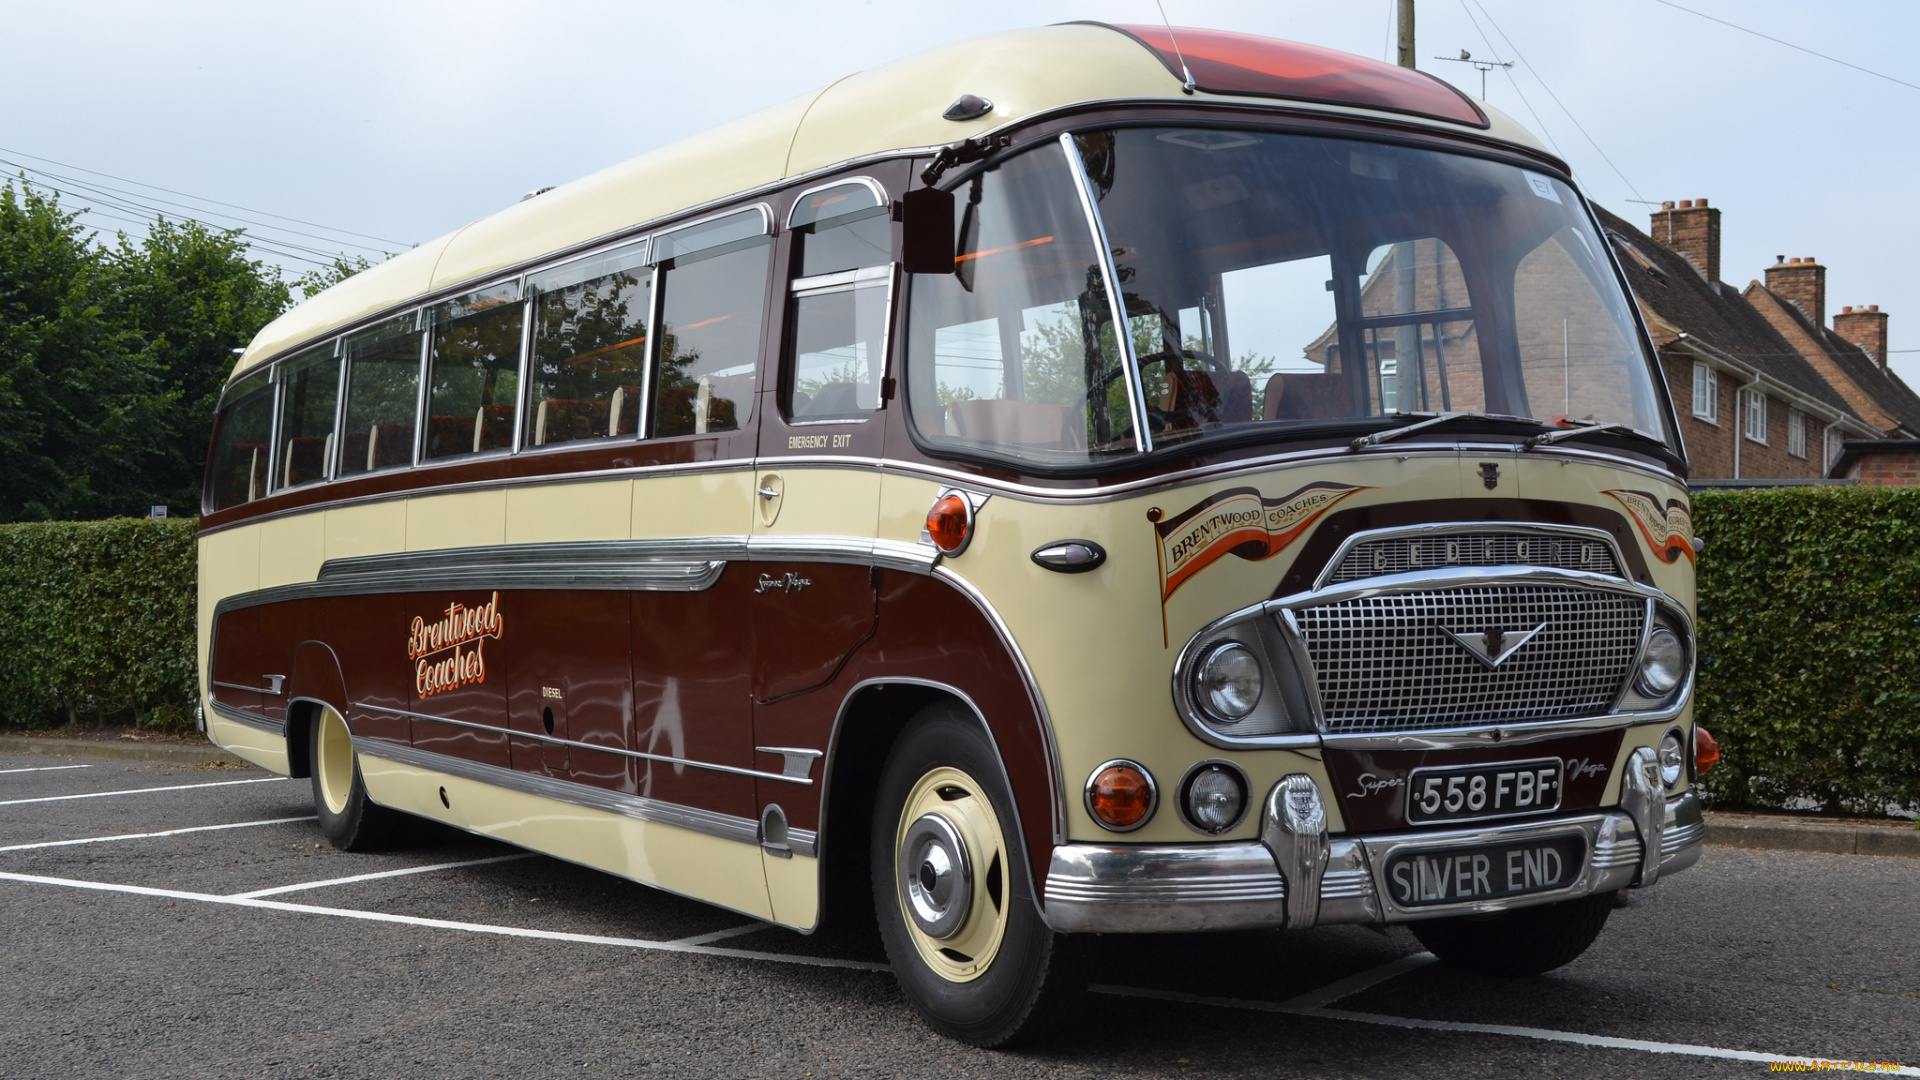 1962, bedford, super, vega, duple, coach, автомобили, автобусы, ретро, автошоу, выставка, история